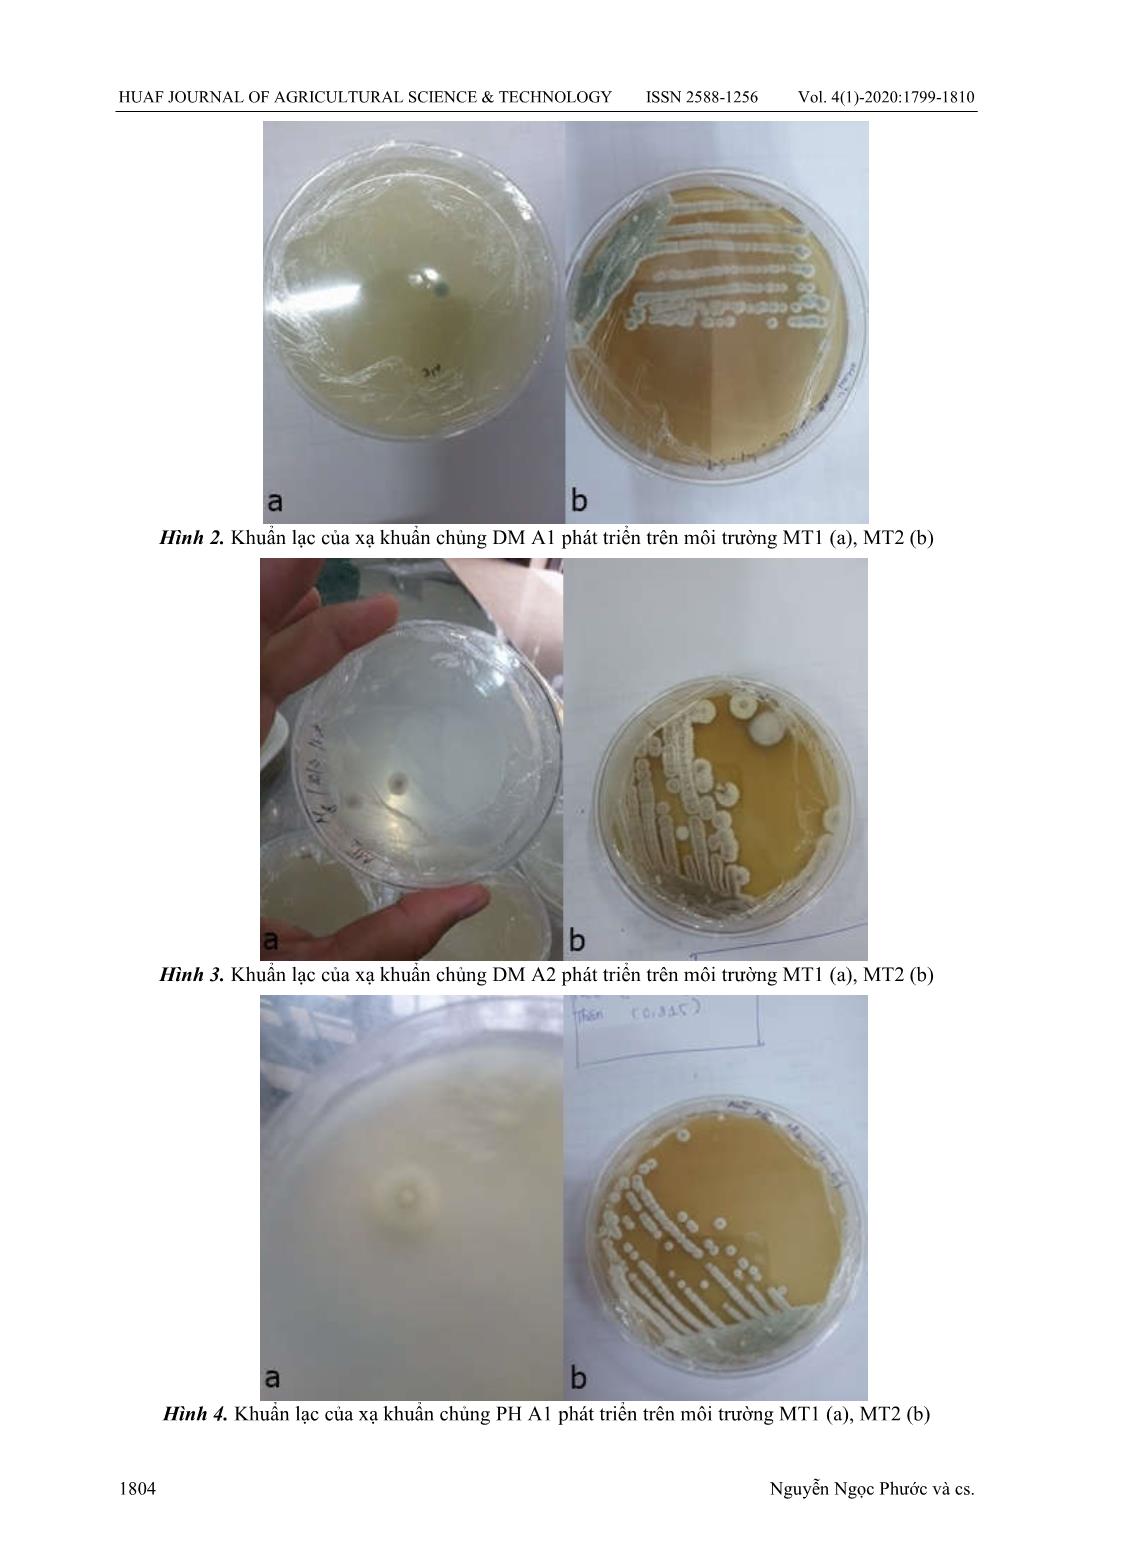 Nghiên cứu một số đặc tính sinh hoá của các chủng xạ khuẩn phân lập được từ các ao nuôi tôm thâm canh tại Thừa Thiên Huế trang 6